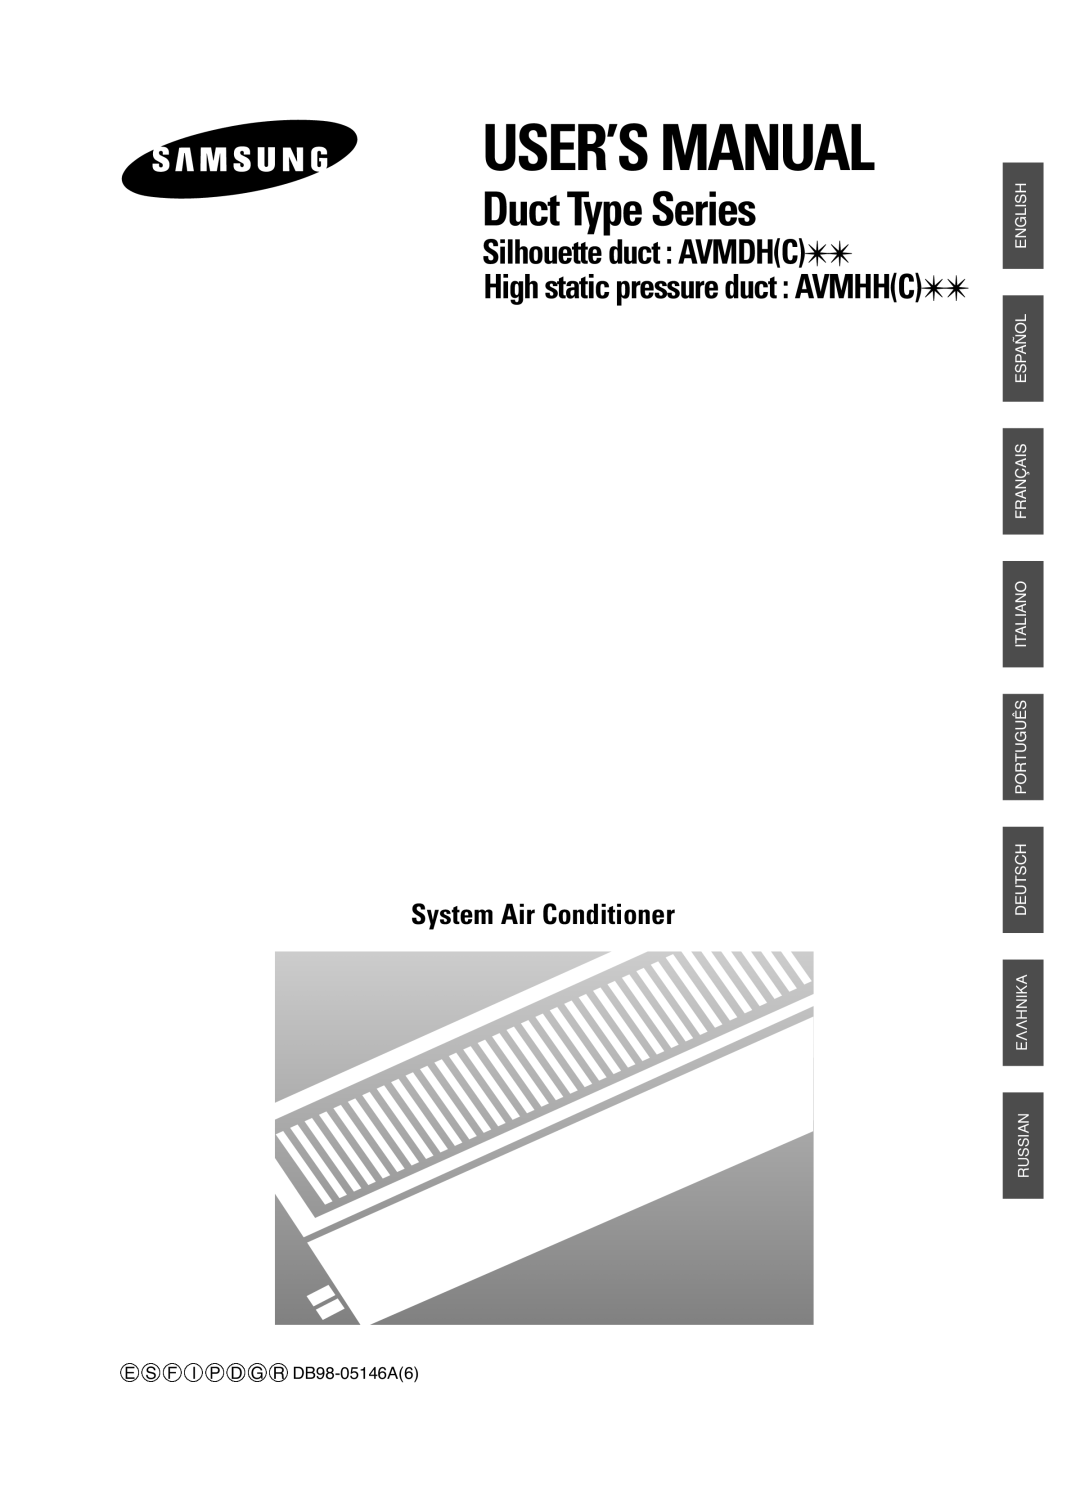 Samsung AVMDH(C) user manual Duct Type Series, Silhouette duct AVMDHC, High static pressure duct AVMHHC 